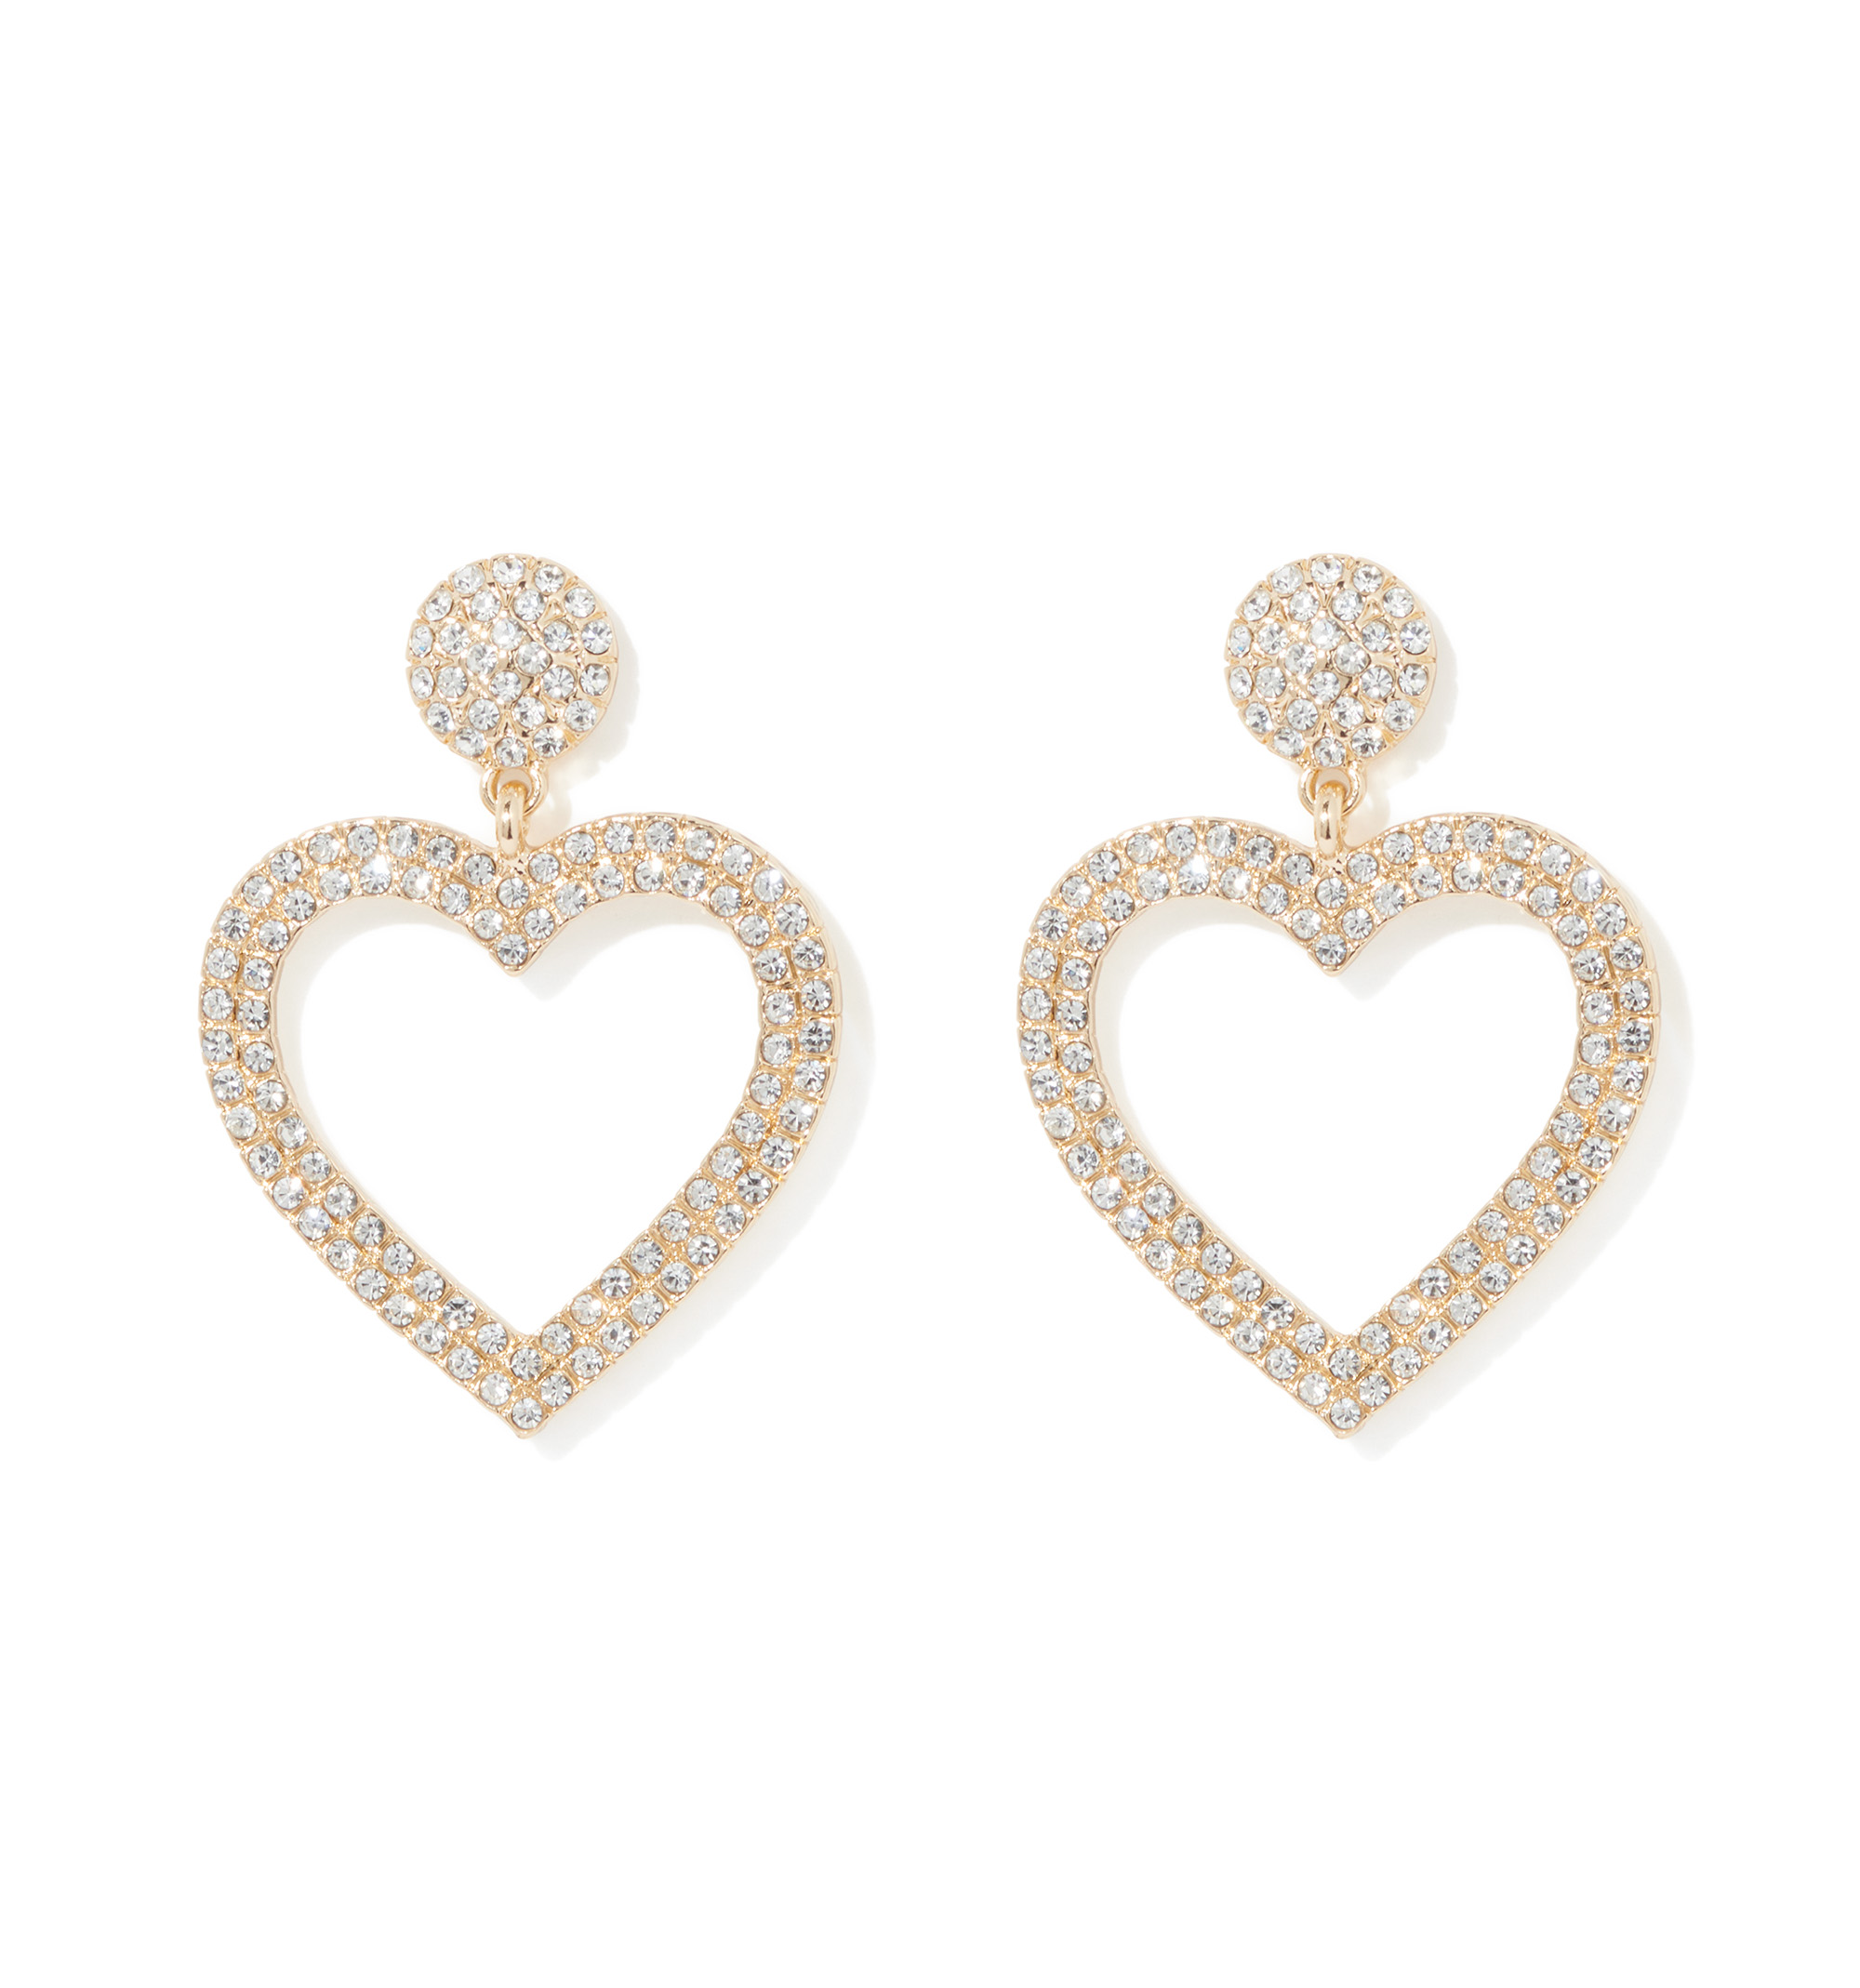 Buy Heart Shaped Bridal Earrings Crystal Heart Drop Earrings Statement  Bridal Earrings CZ Drop Earrings Heart Wedding Earrings Online in India -  Etsy